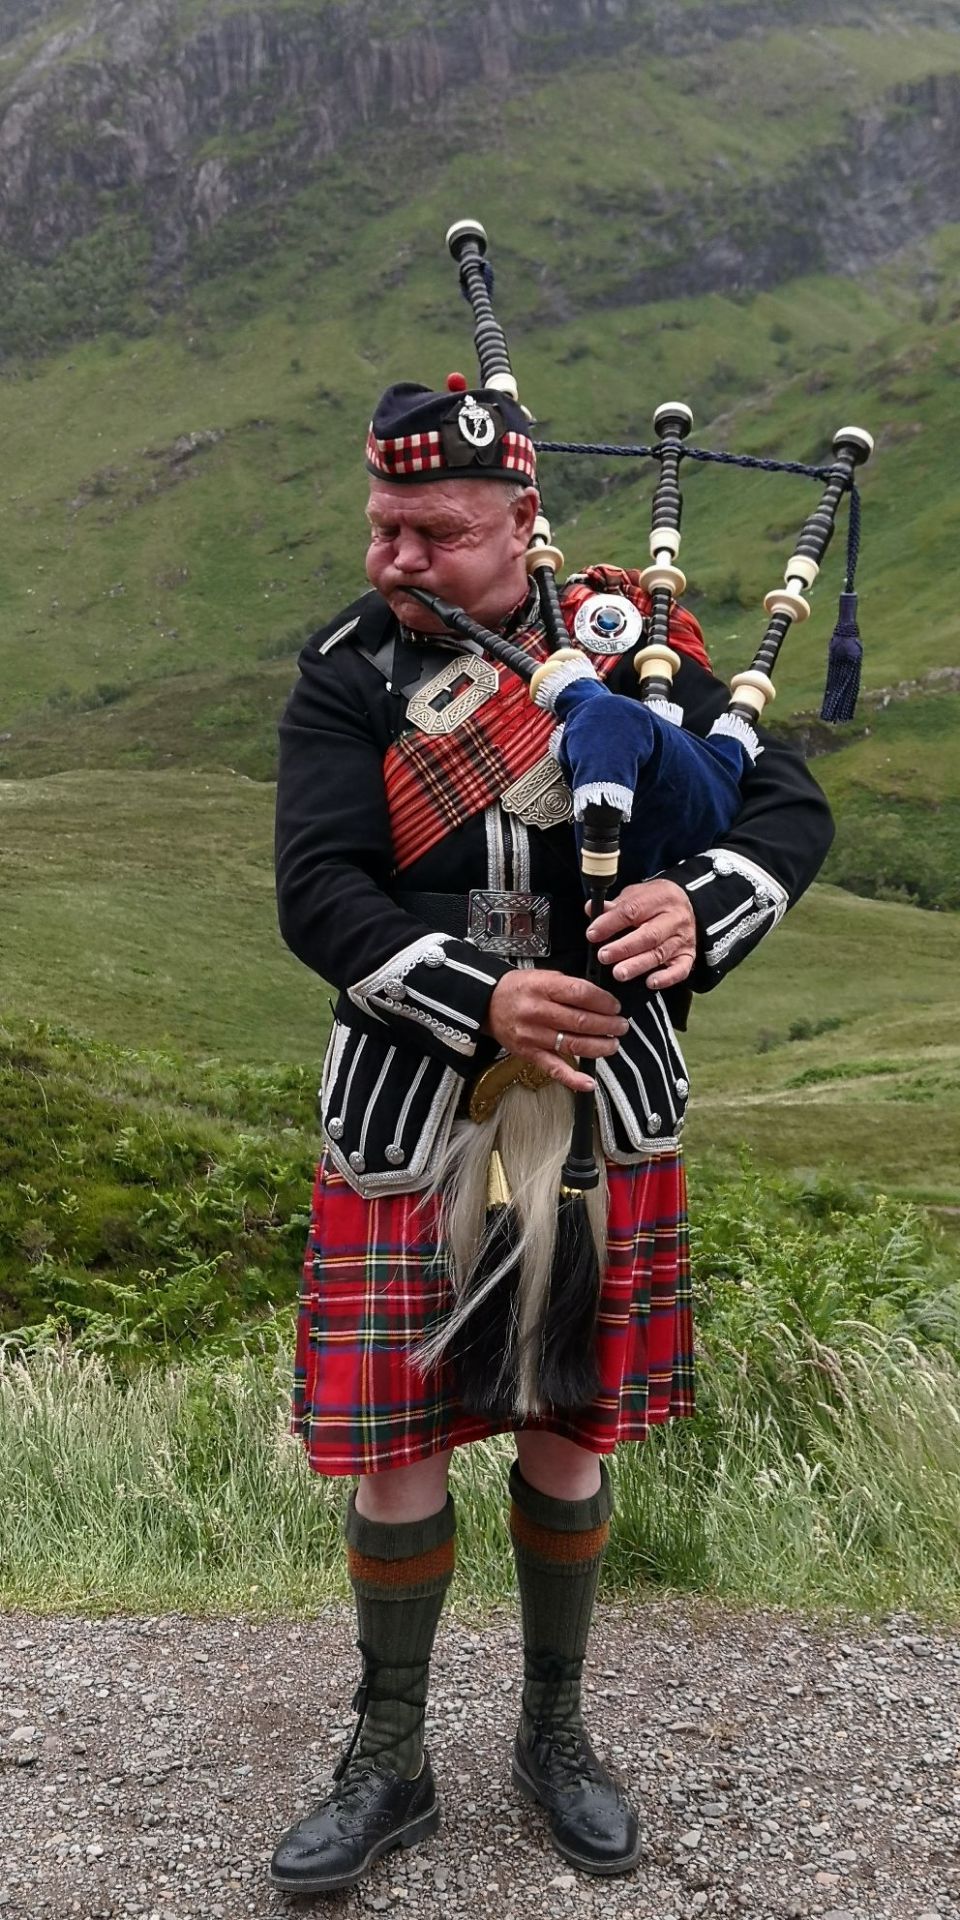 在威廉堡.苏格兰高地倾听悠扬顿挫的风笛。